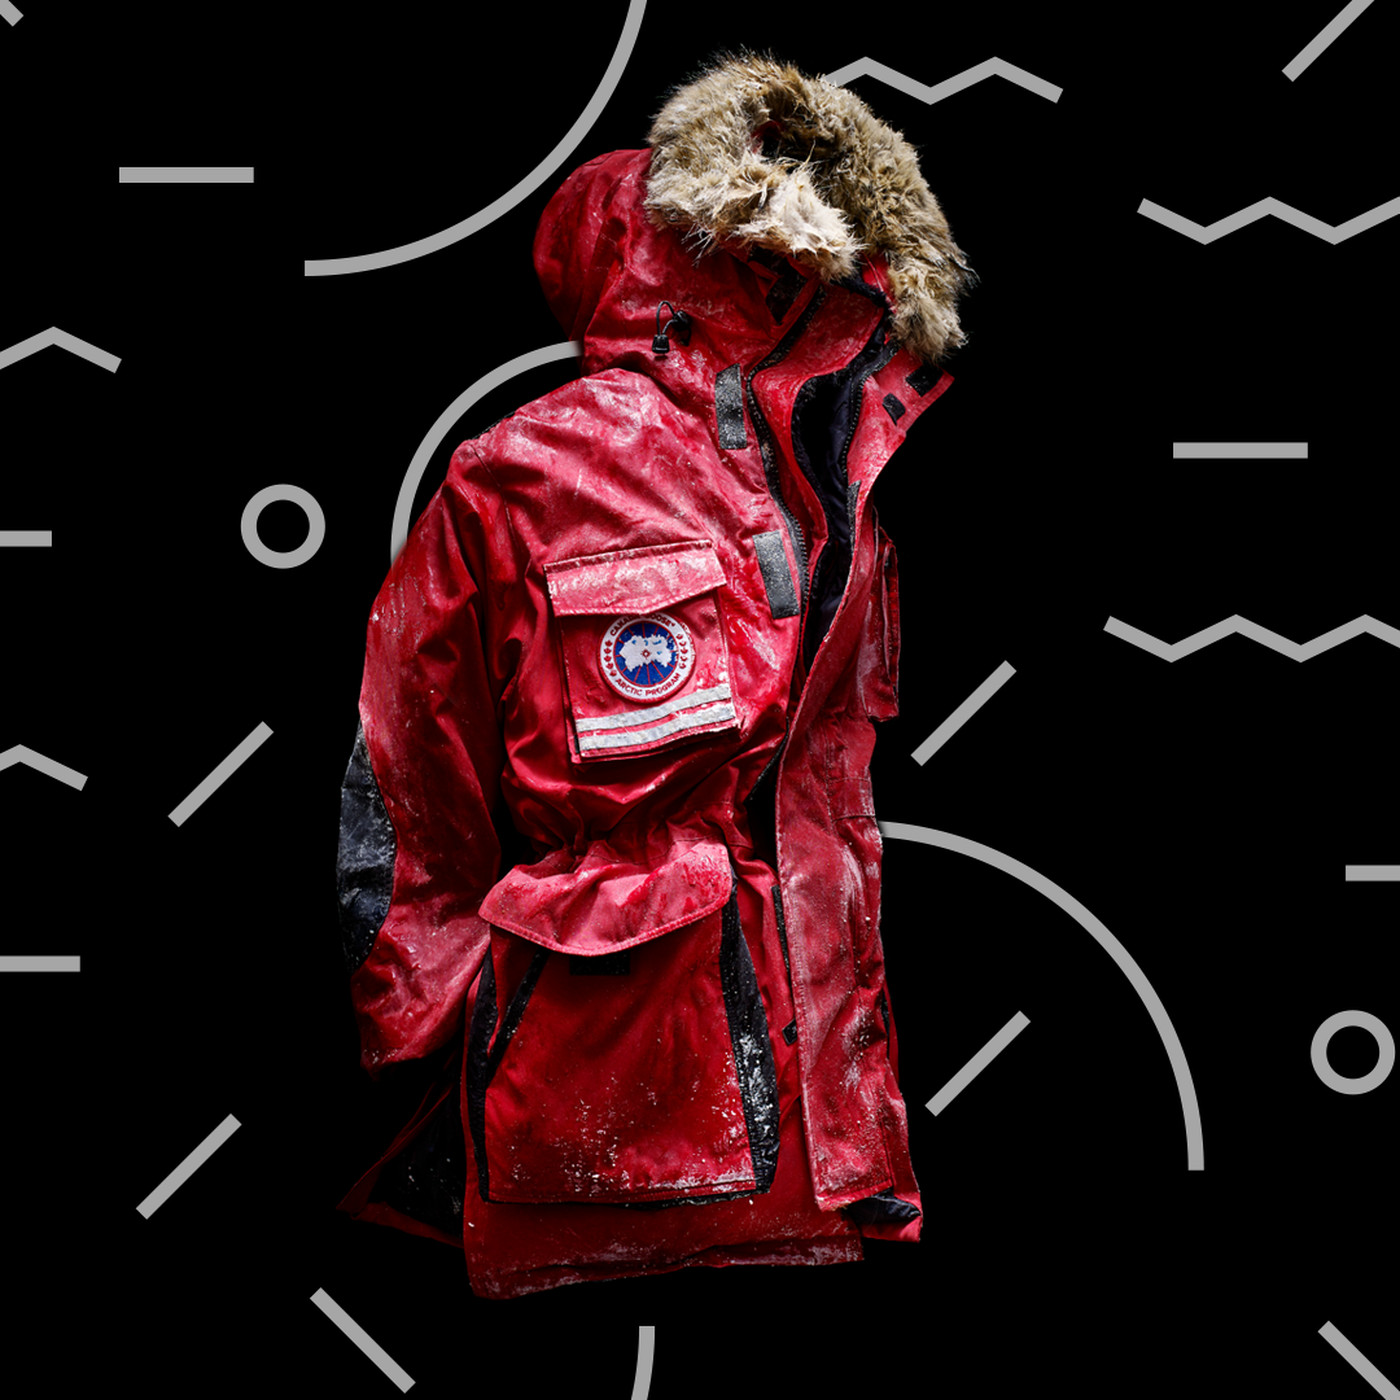 De Kamer Meesterschap Afscheiden Canada Goose and Moncler: the race to make warm winter outerwear - Vox